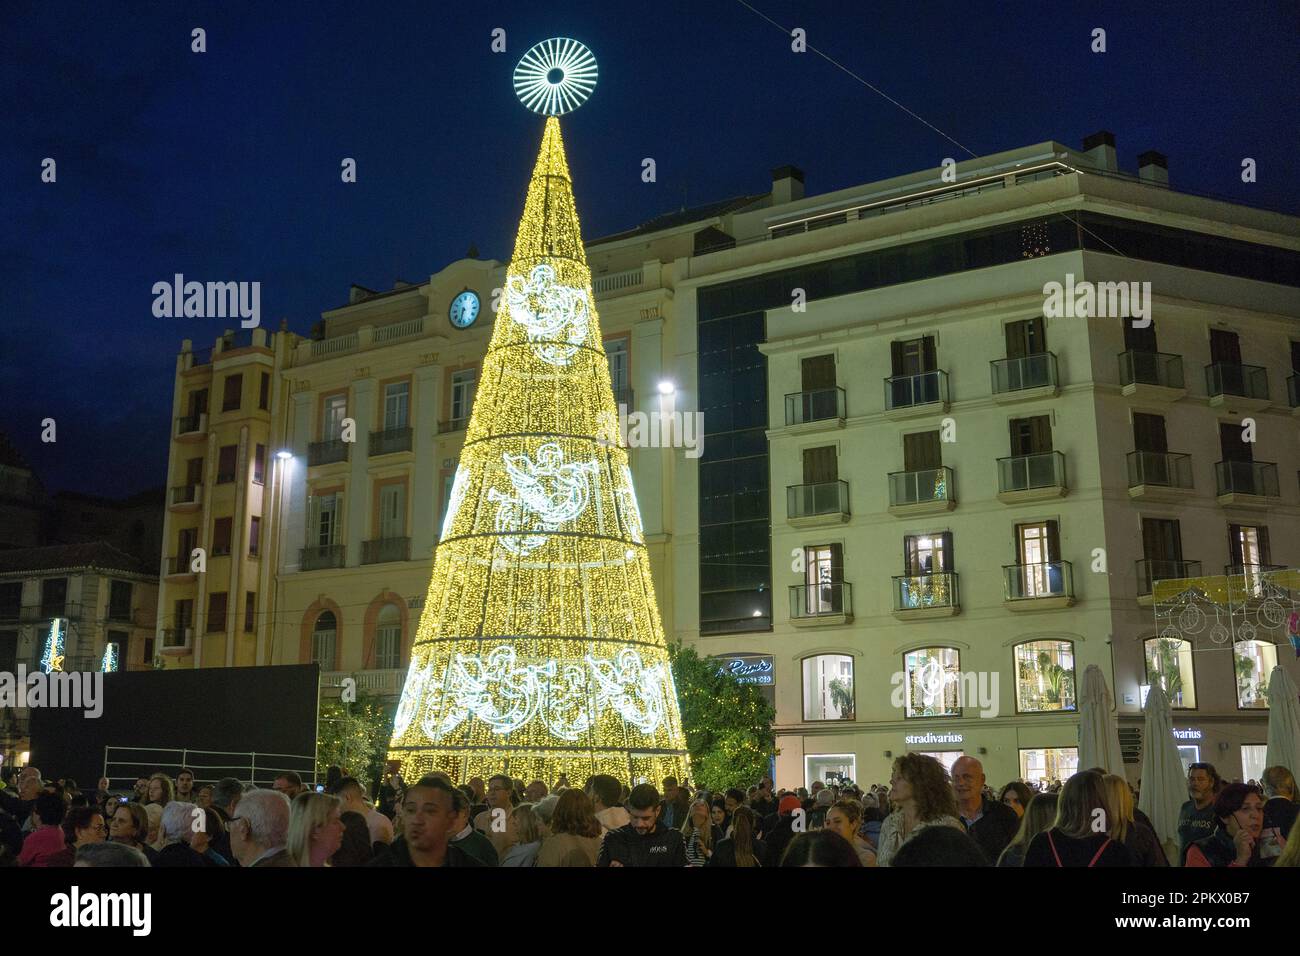 Illuminations de Noël sur la Plaza de la Constitucionine, à côté de la Calle marques de Larios, Malaga, Andalousie, Costa del sol, Espagne, Europe Banque D'Images